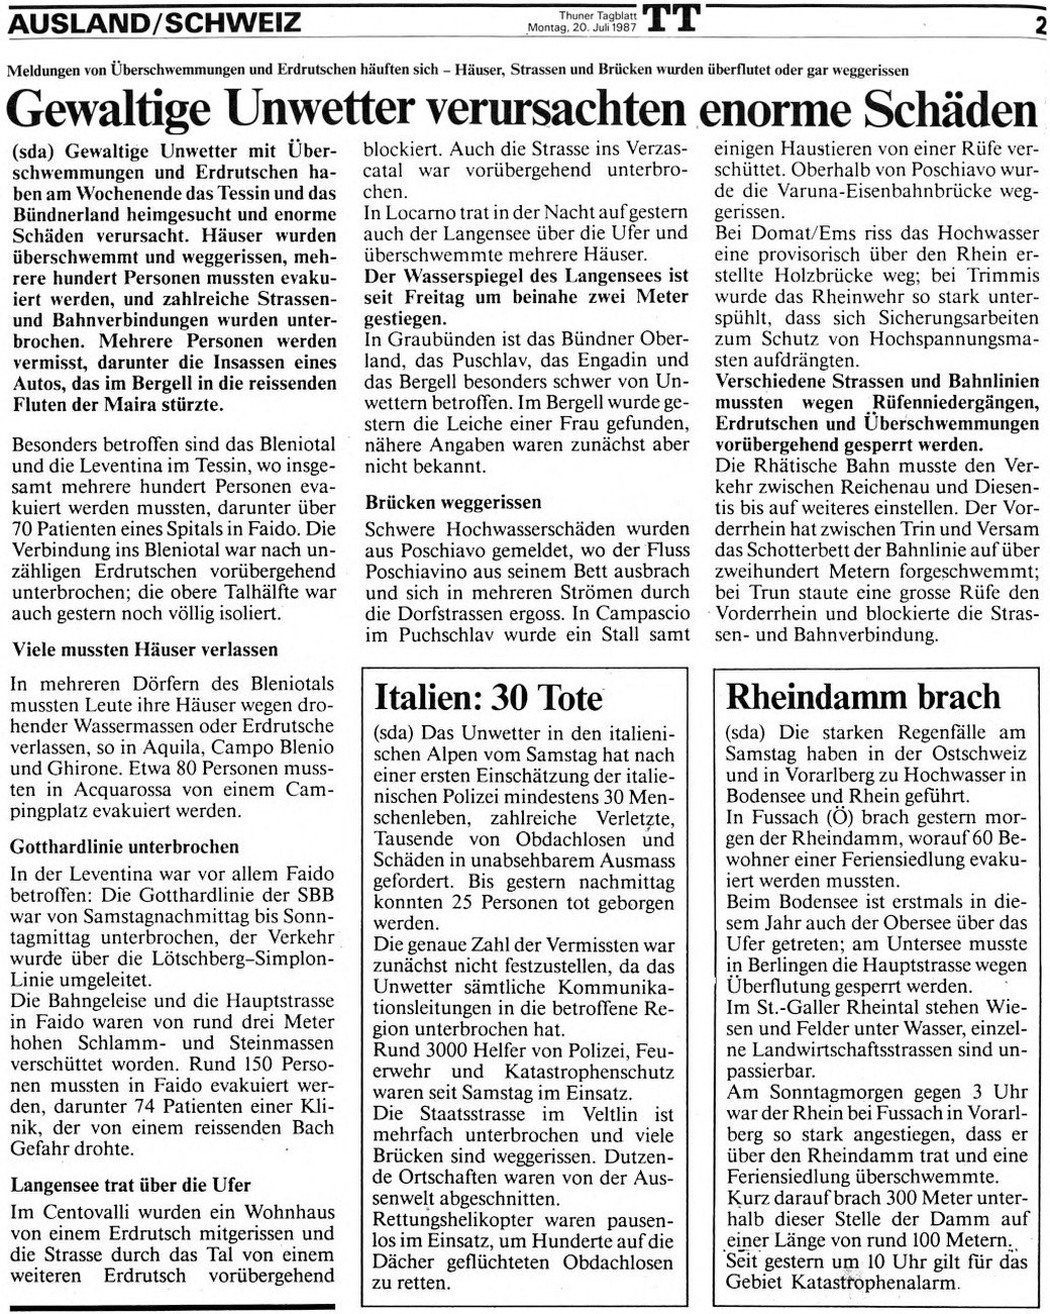 19870718 01 Flood Südostschweiz Thuner Tagblatt 20.07.87.jpg